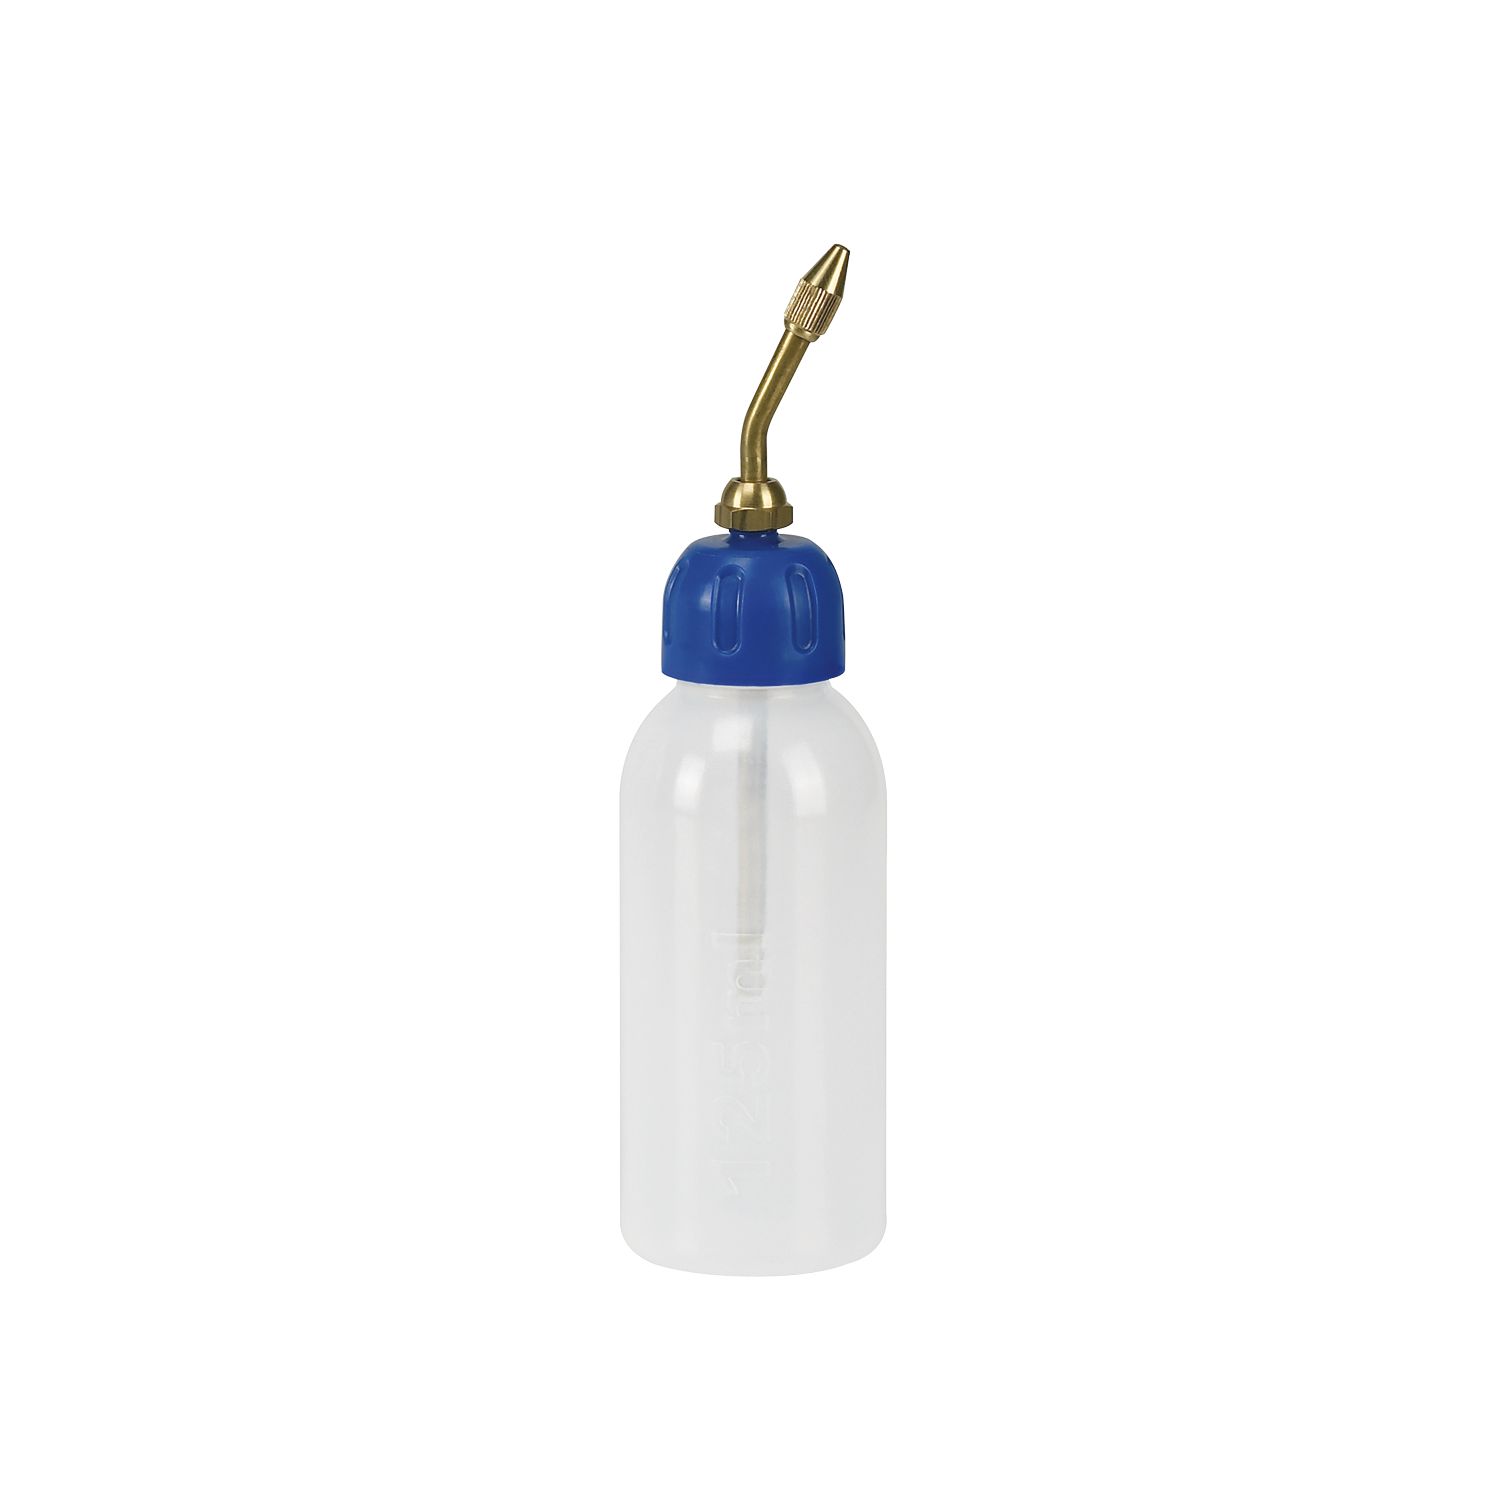 PRESSOL Messbecher 2 Liter weiß /transparent - 07522 - 4103810075223, 10,99  €